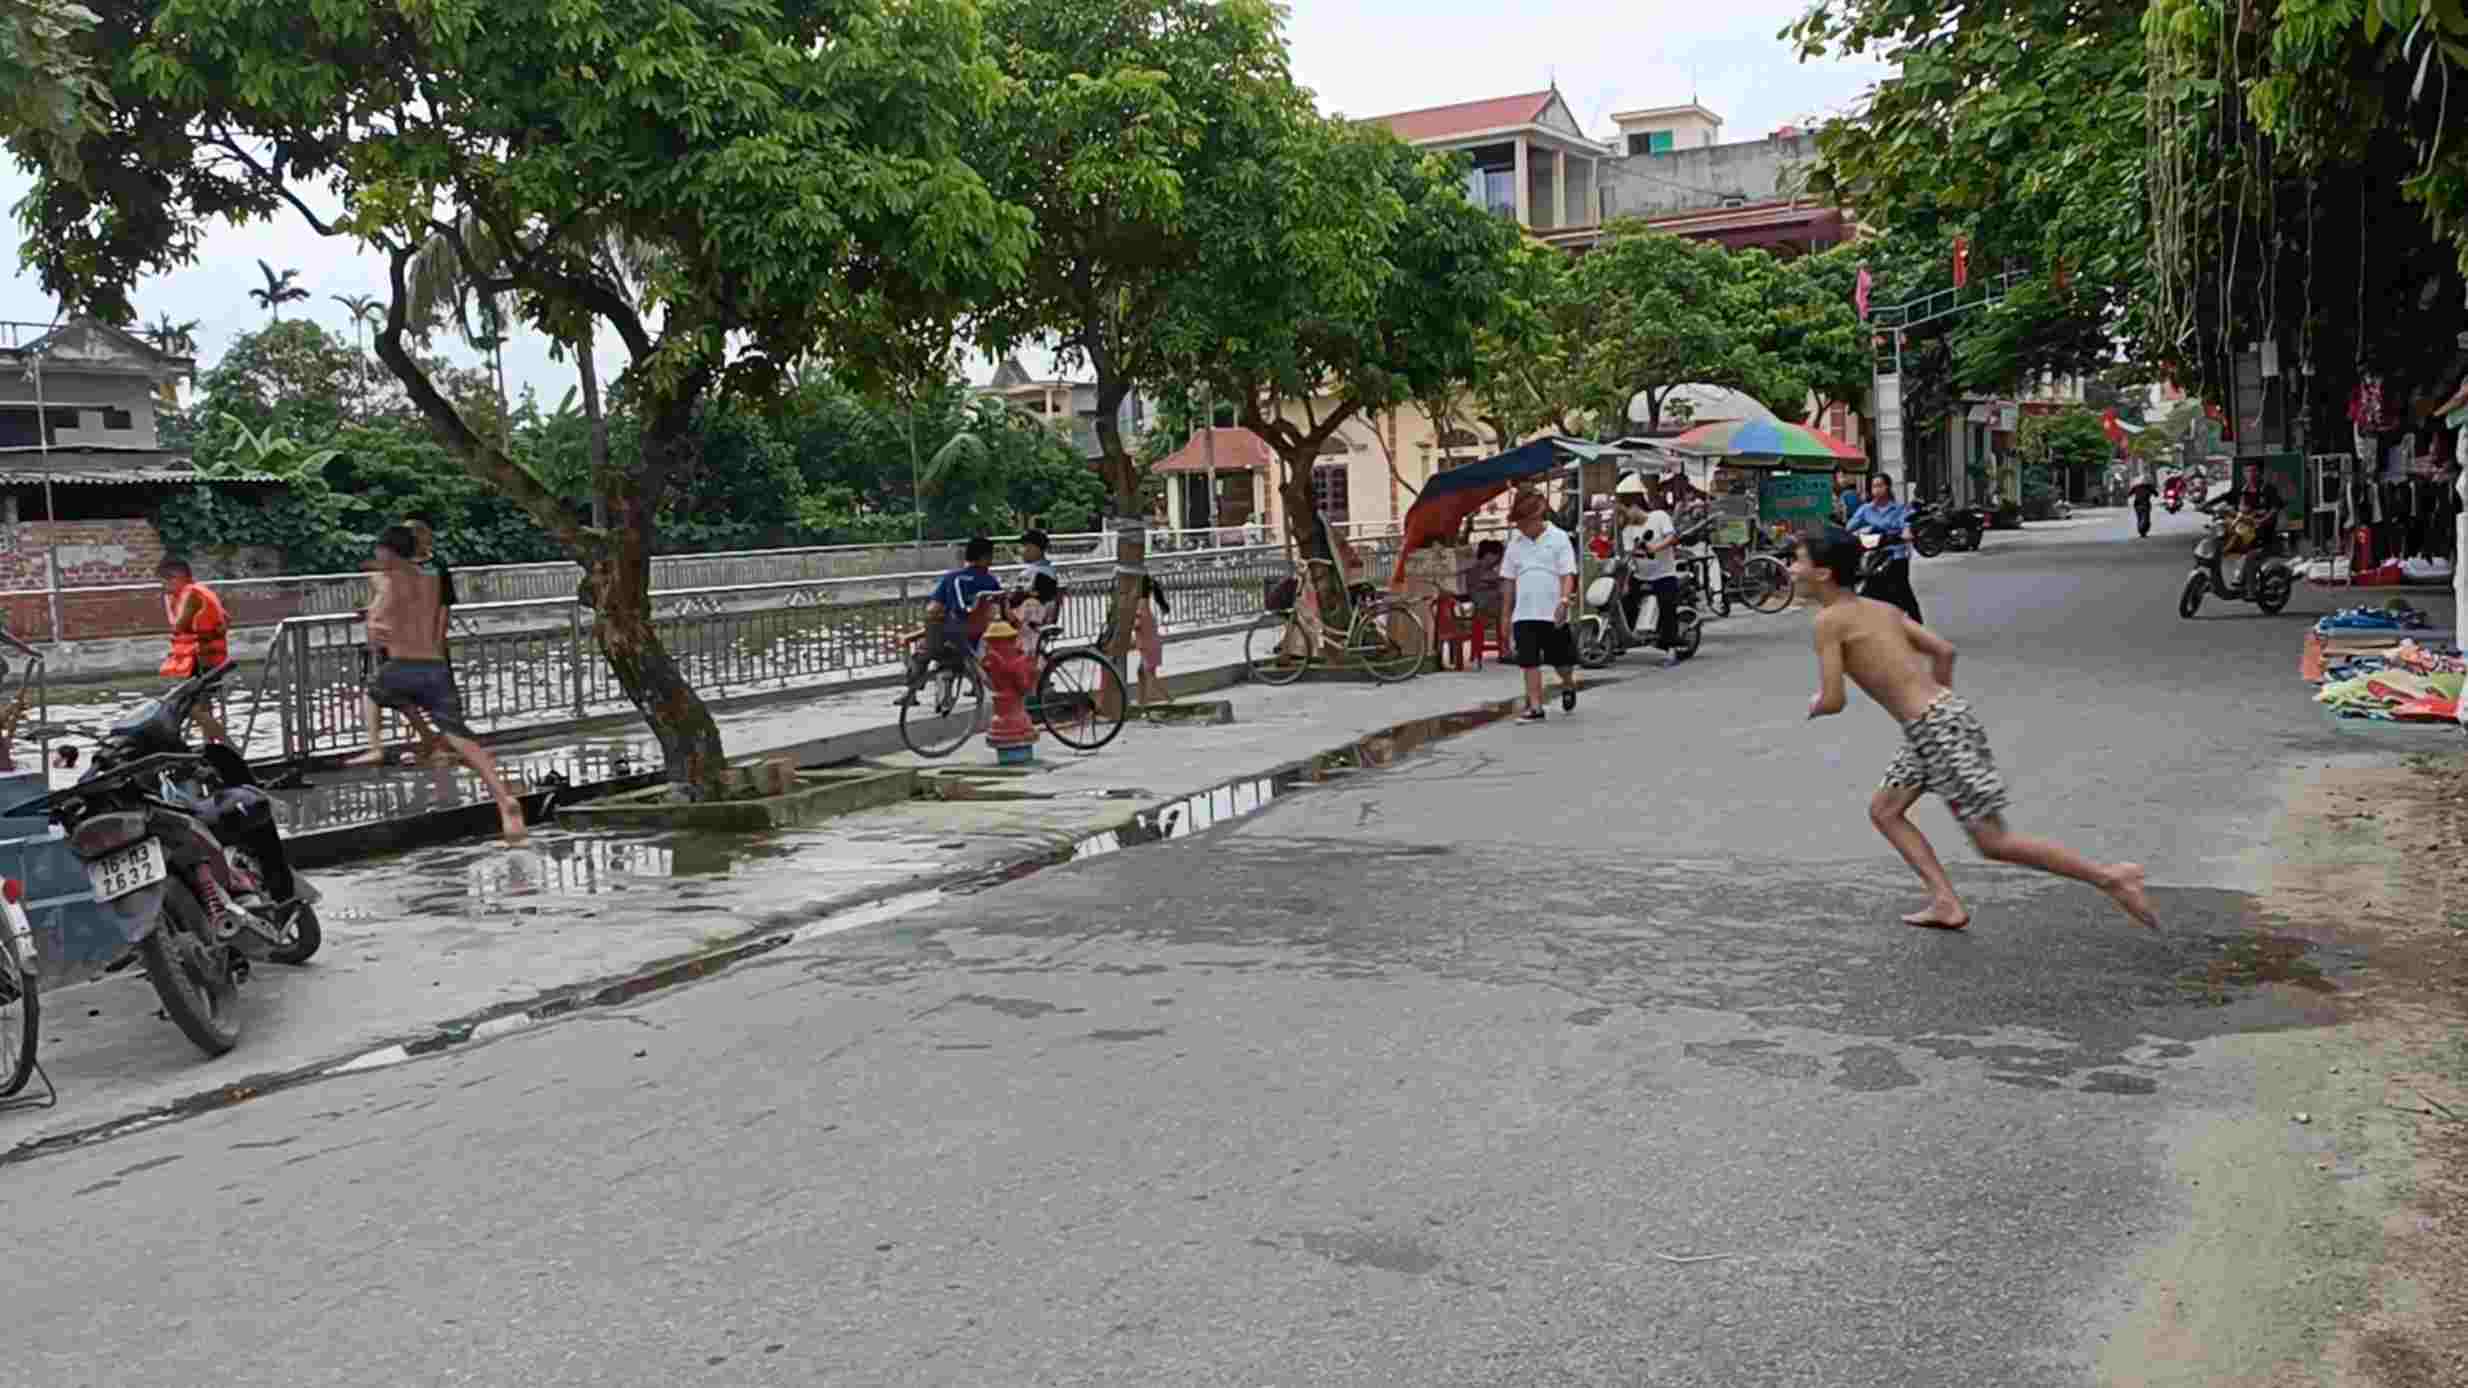 Nhiều em nhỏ còn chạy băng qua đường để lấy đà nhảy xuống hồ bơi, gây nguy hiểm cho người tham gia giao thông. Ảnh: Hoàng Khôi